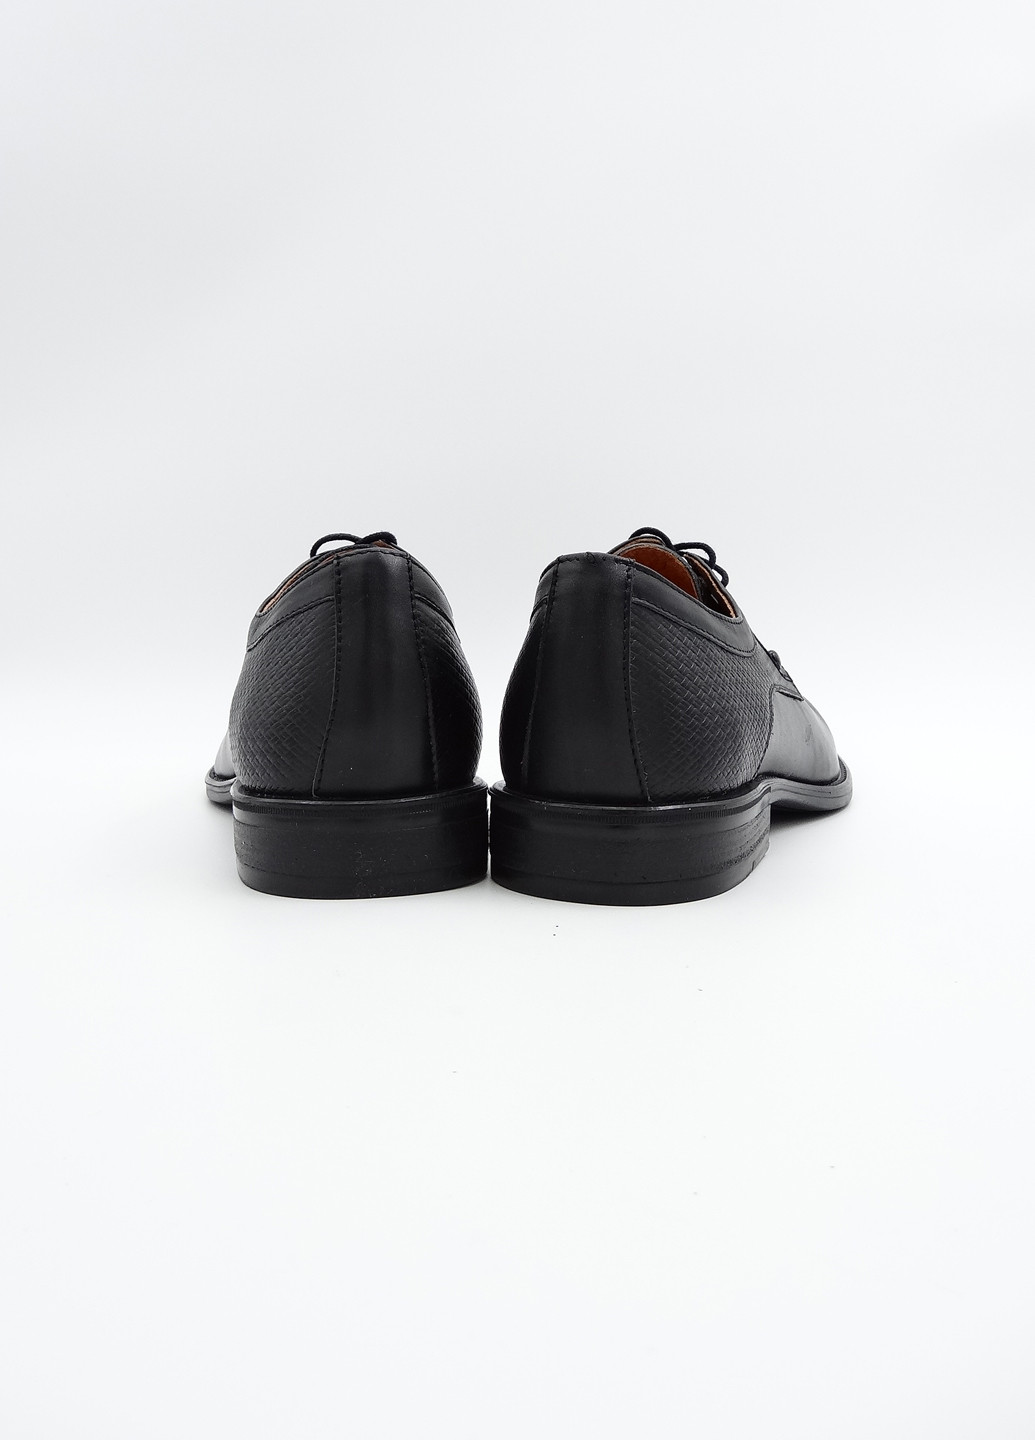 Черные классические туфли Rondo на шнурках